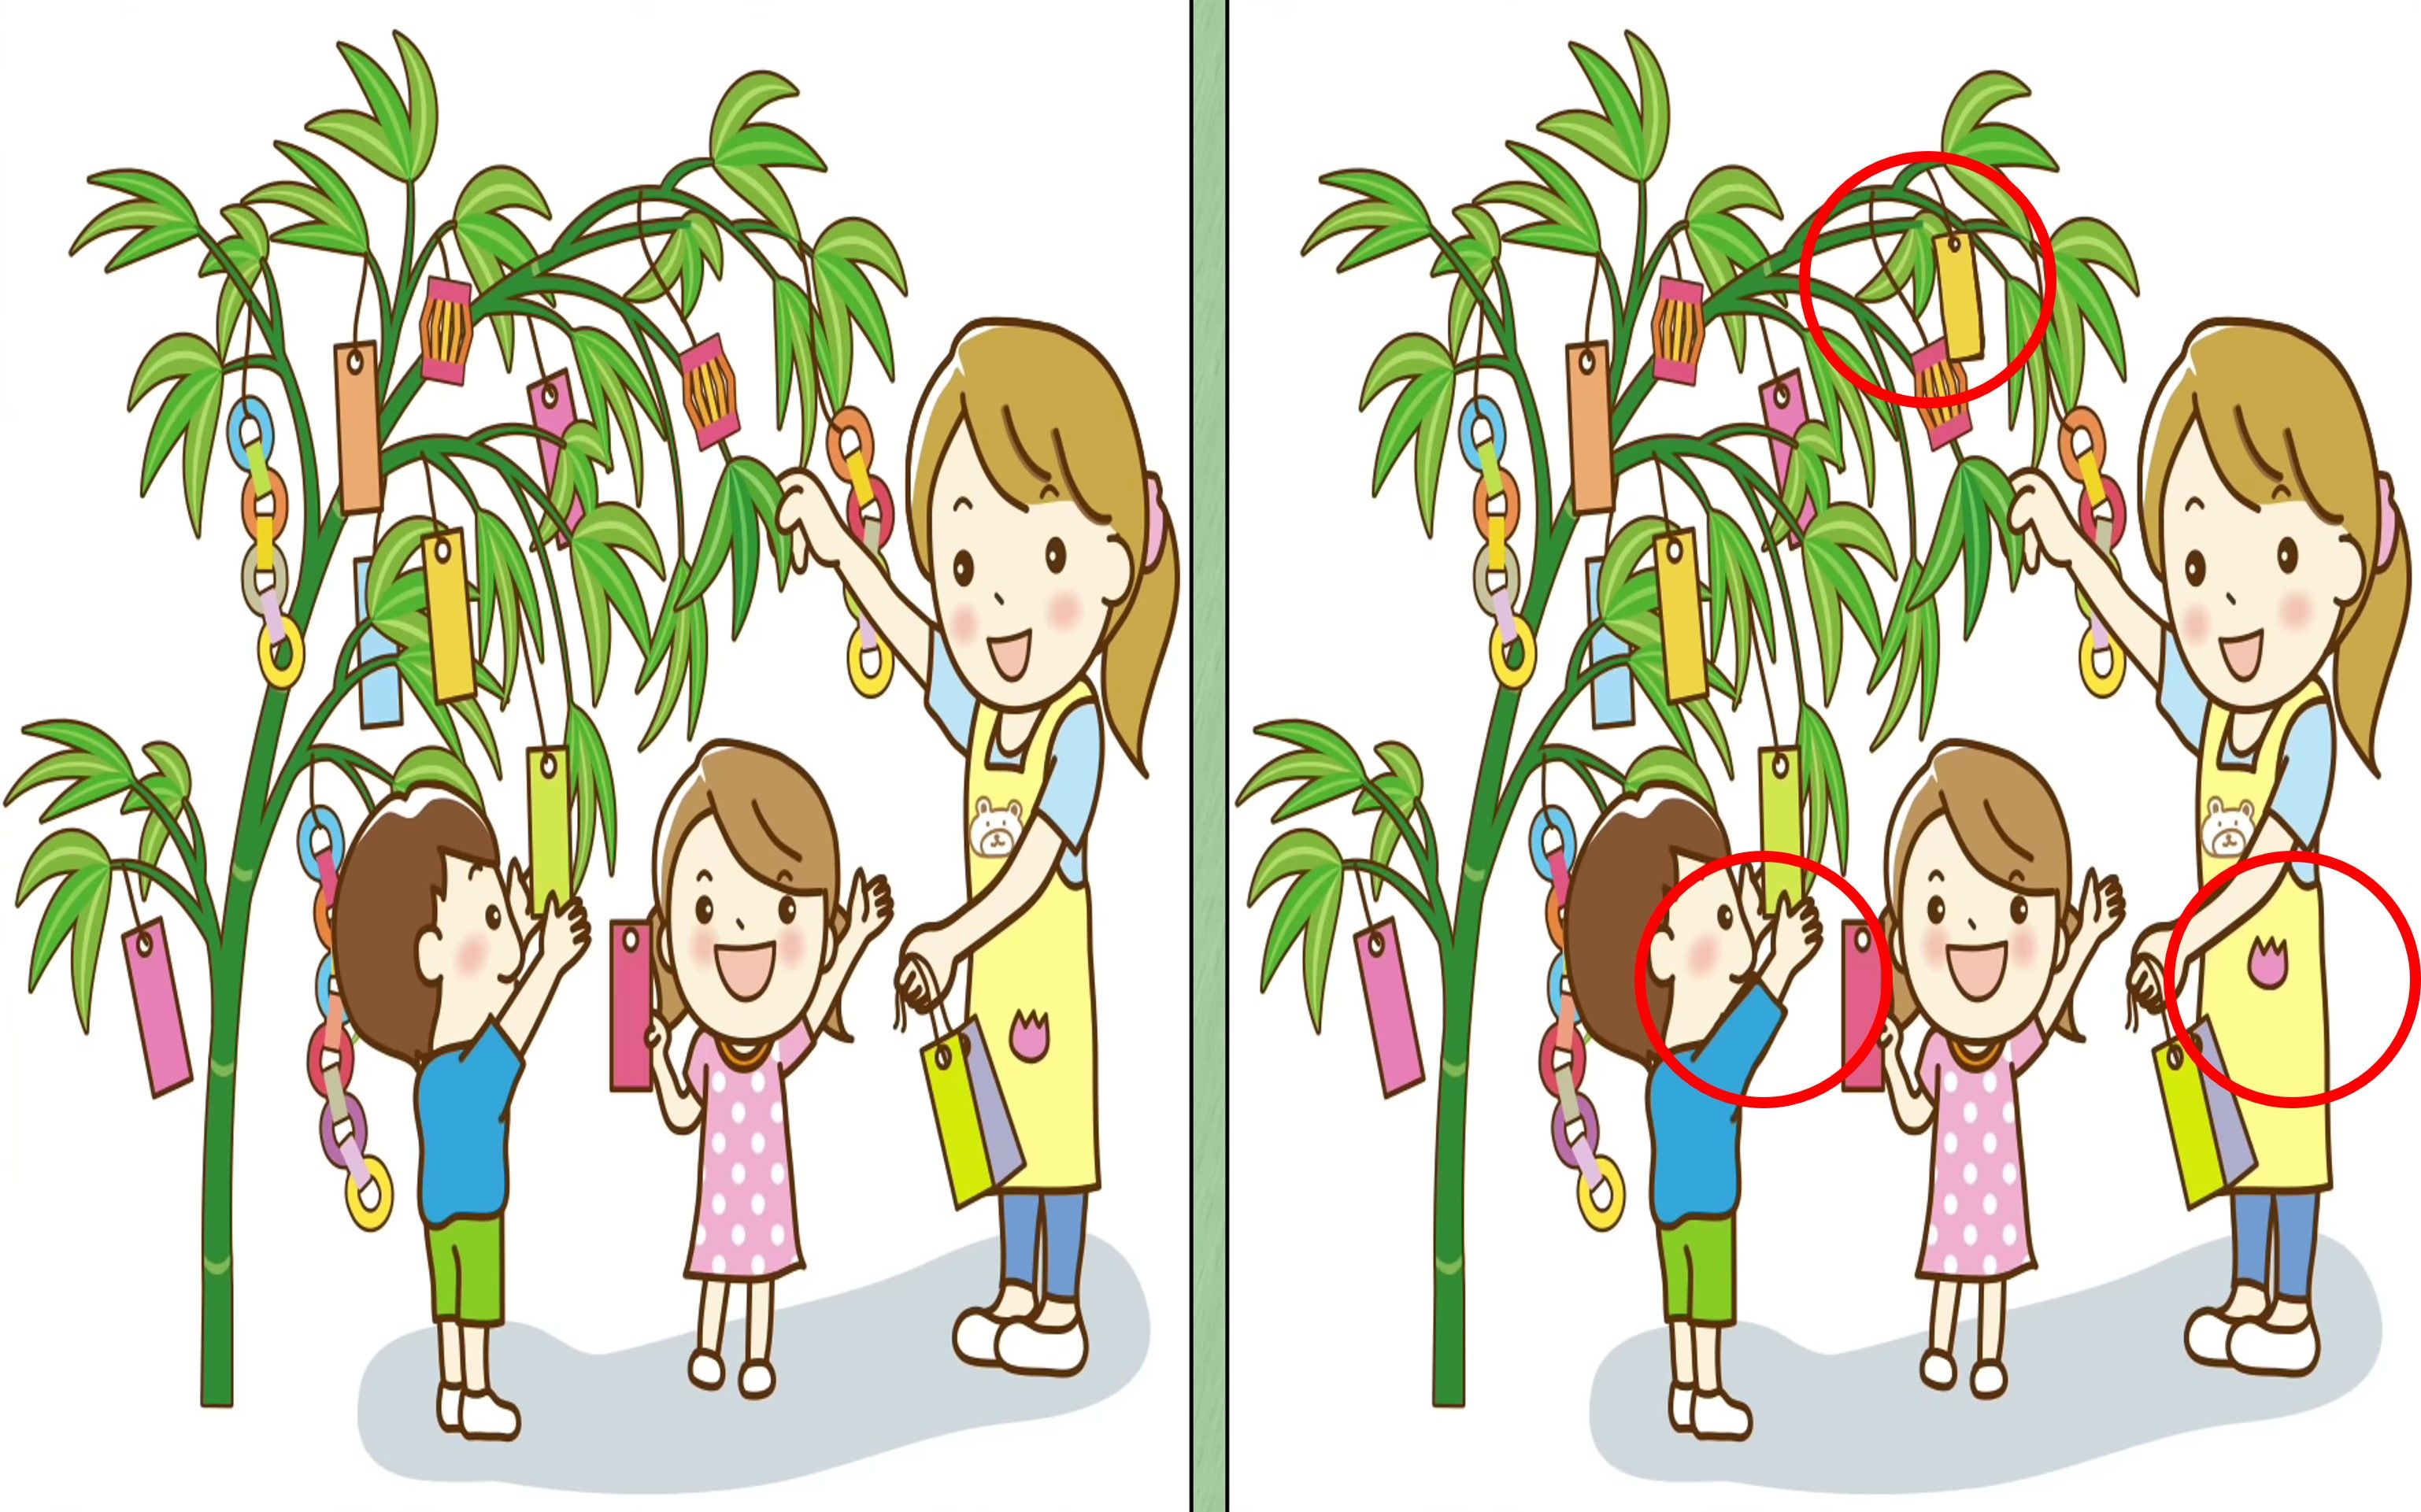 Jawaban tes fokus dalam menemukan perbedaan pada gambar anak dan pohon.